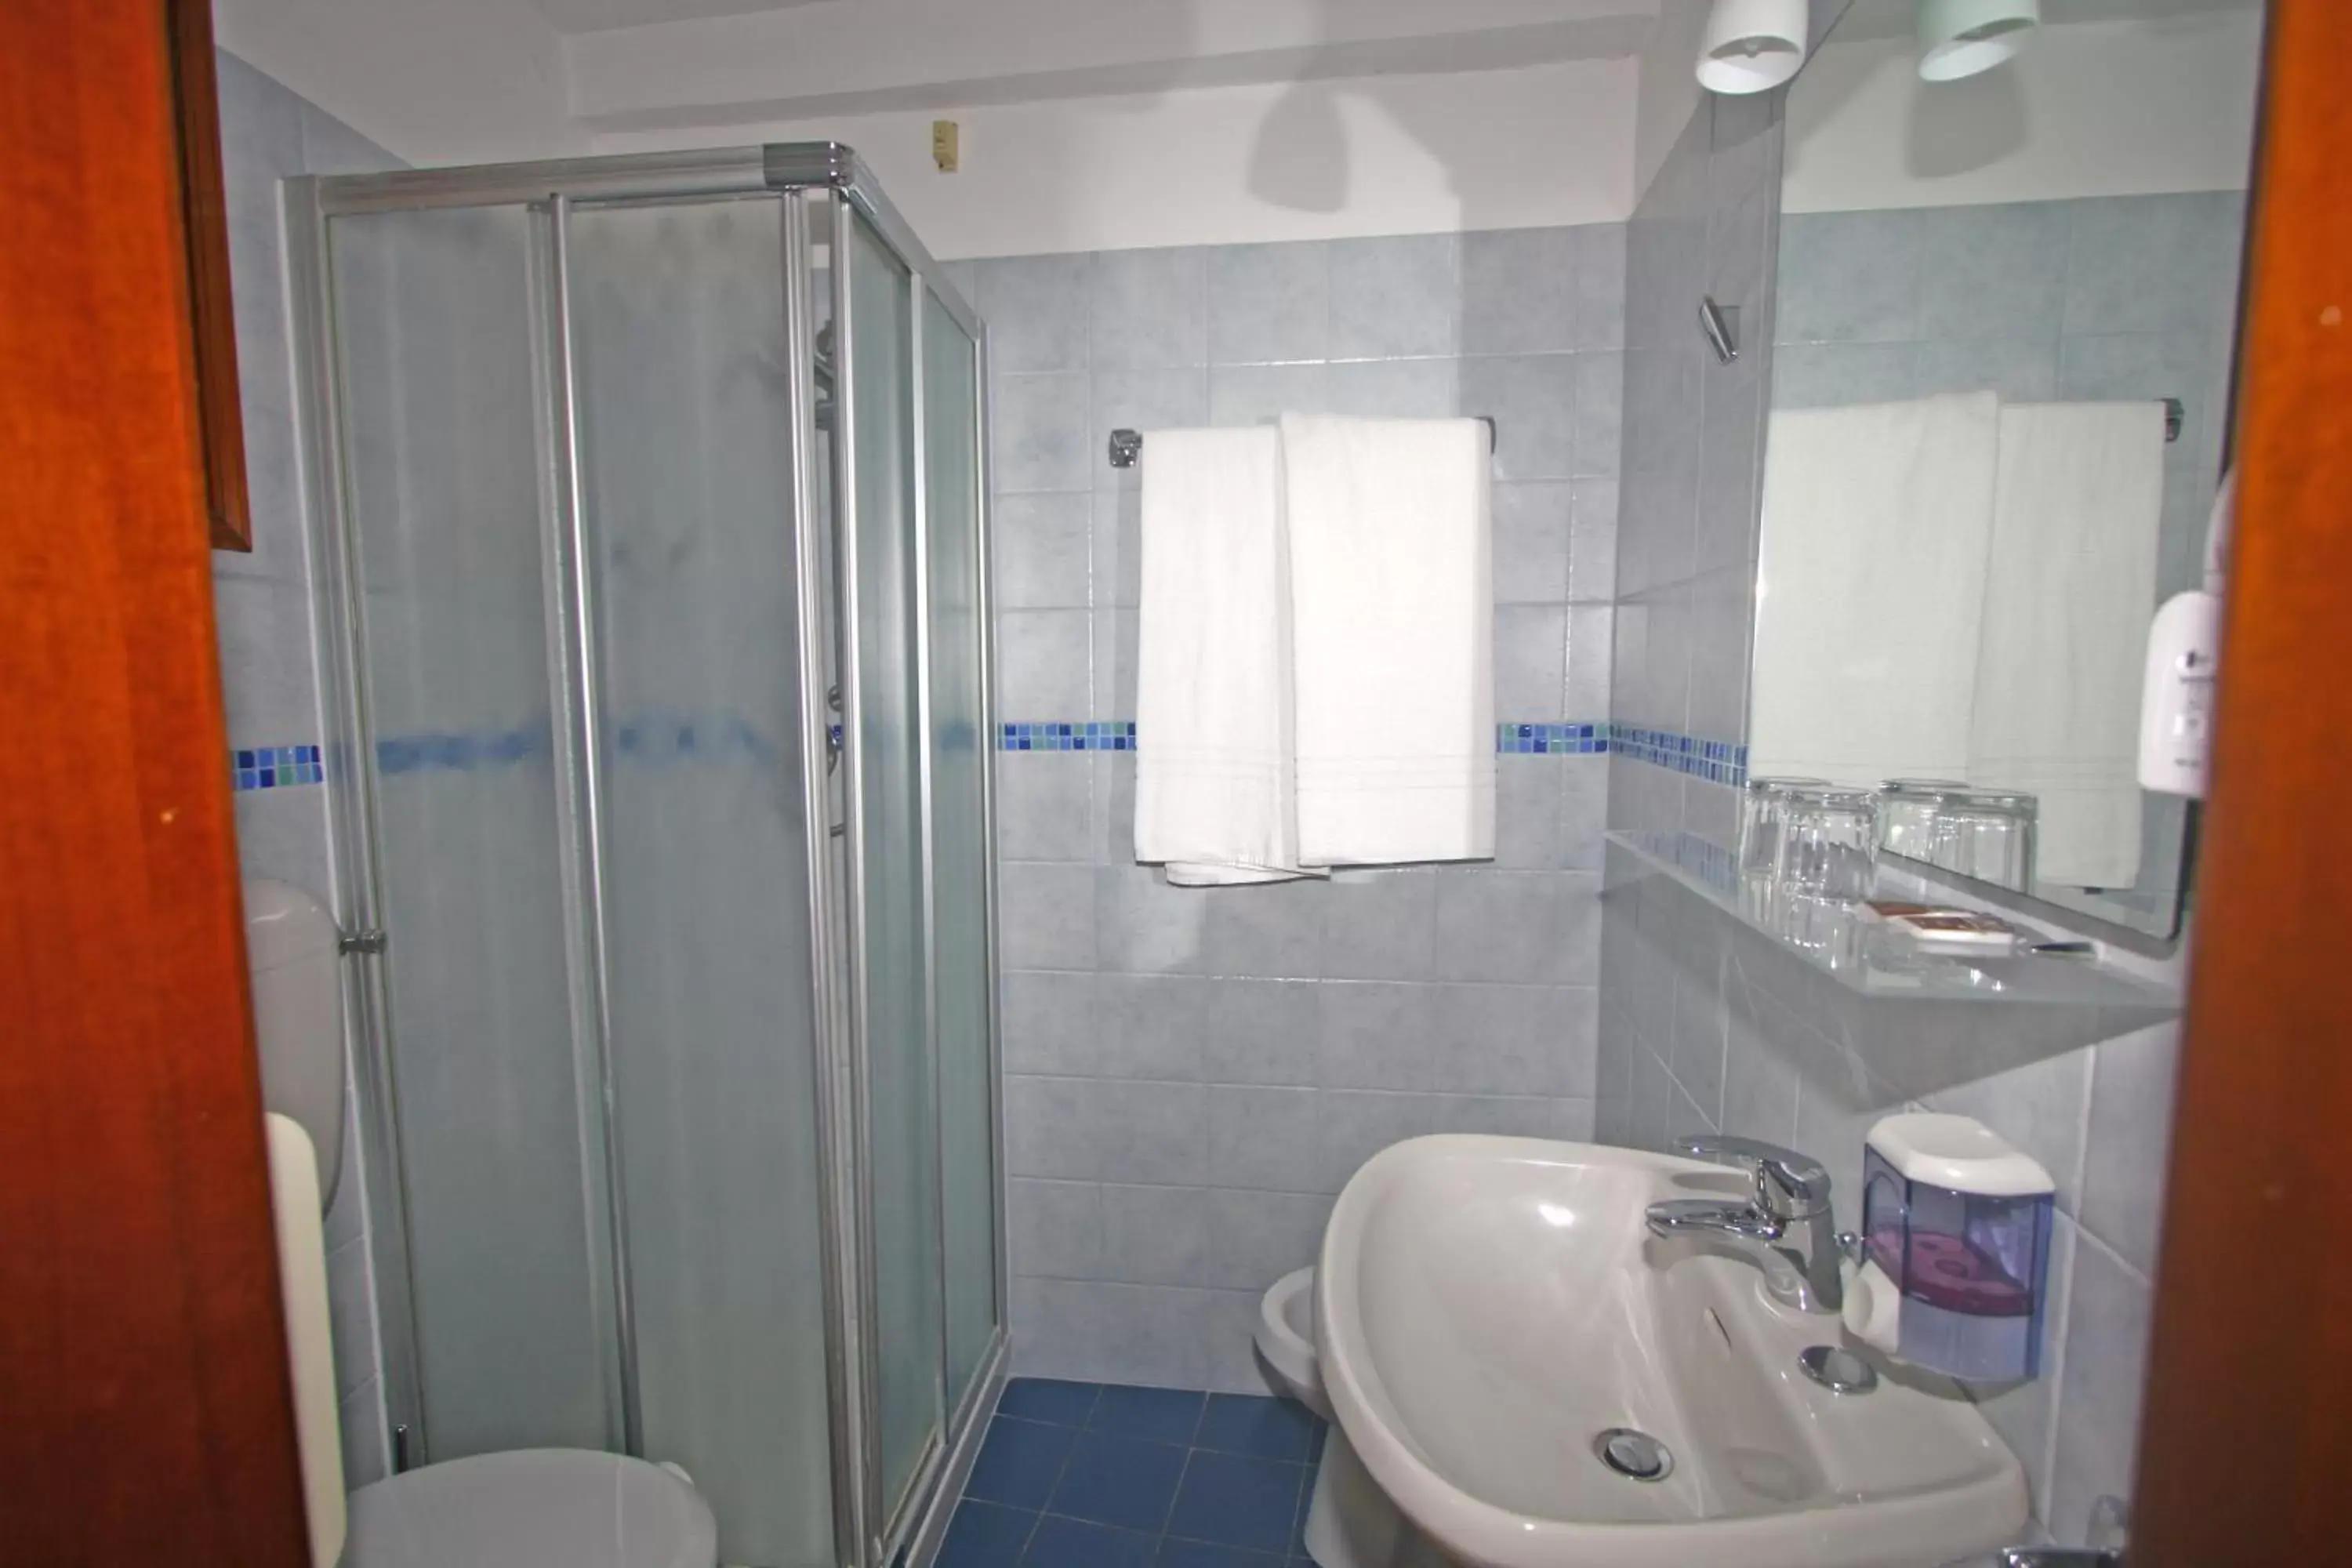 Bathroom in Hotel dalla Mora